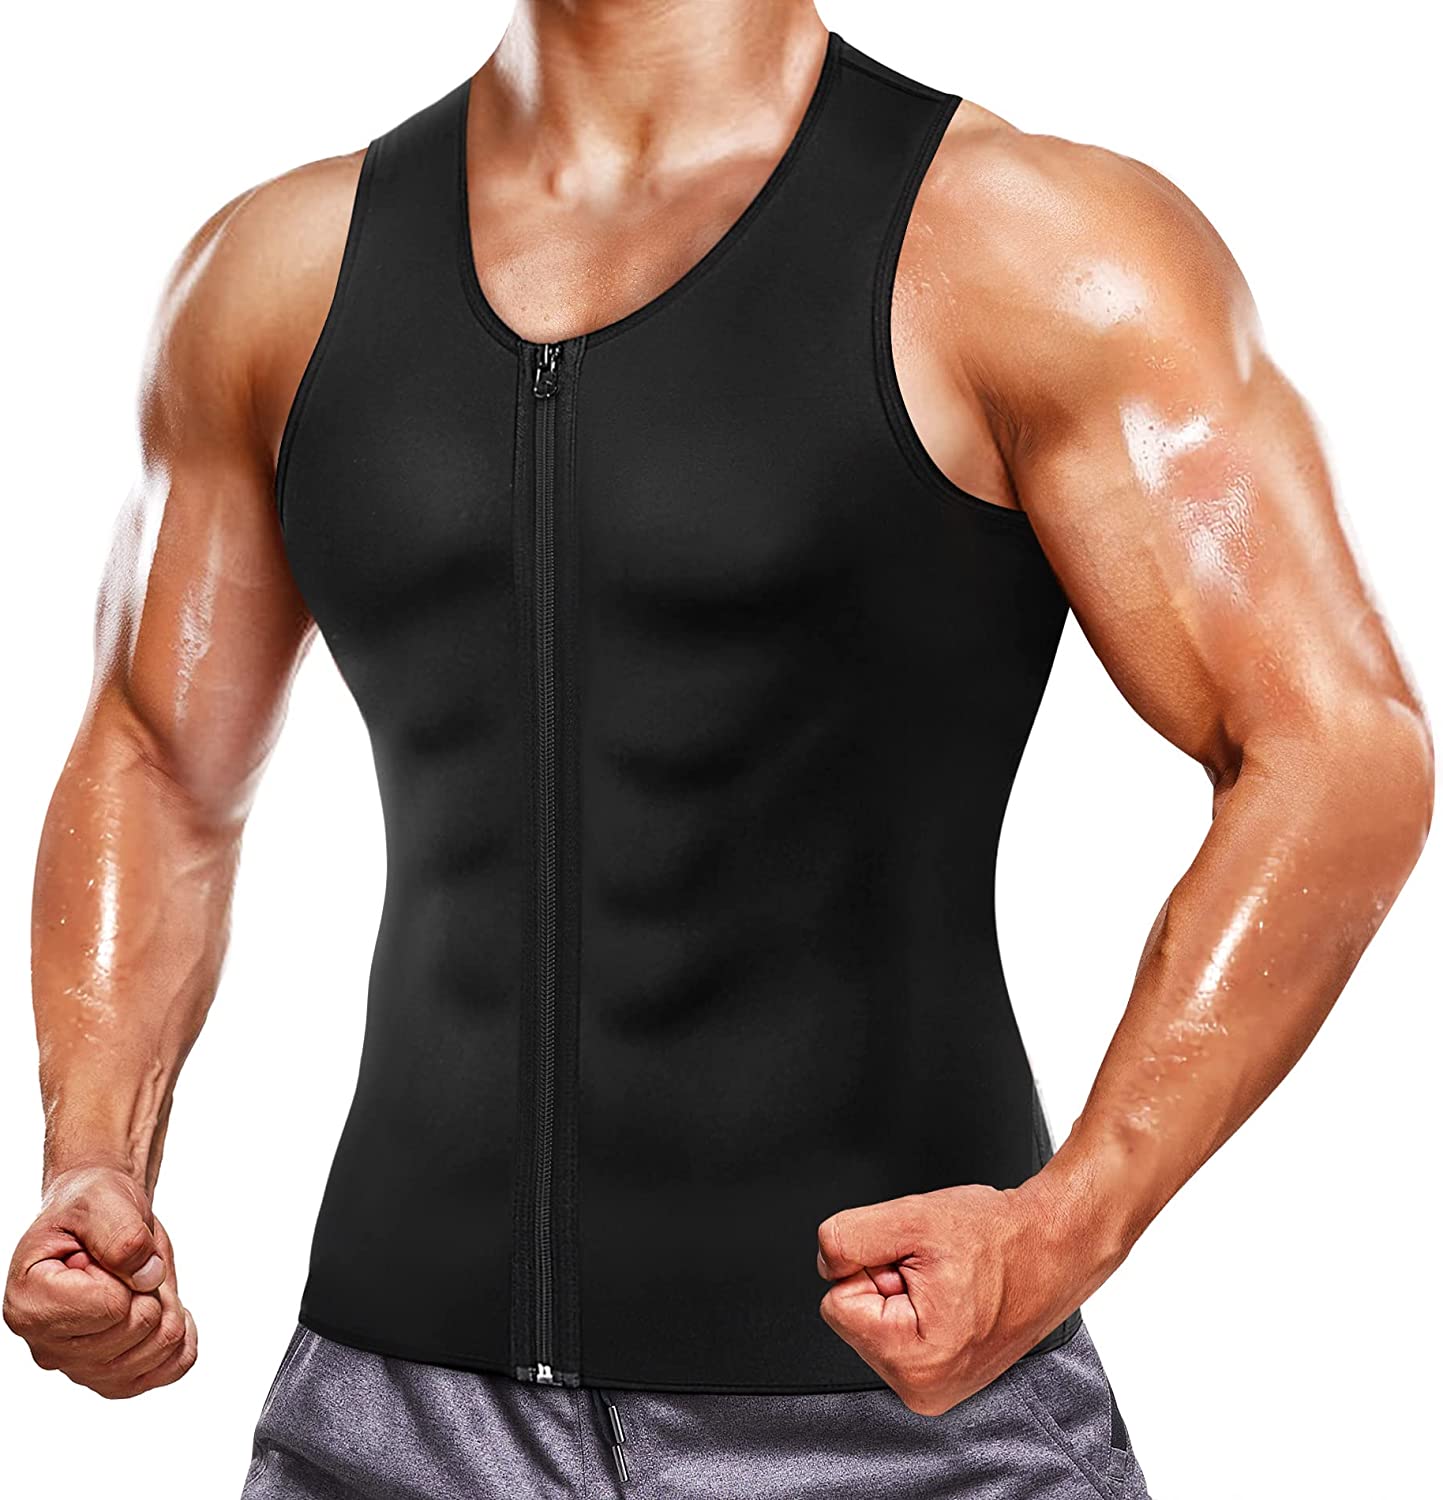 Sauna Suit for Men Waist Trainer Neoprene Sweat Vest with